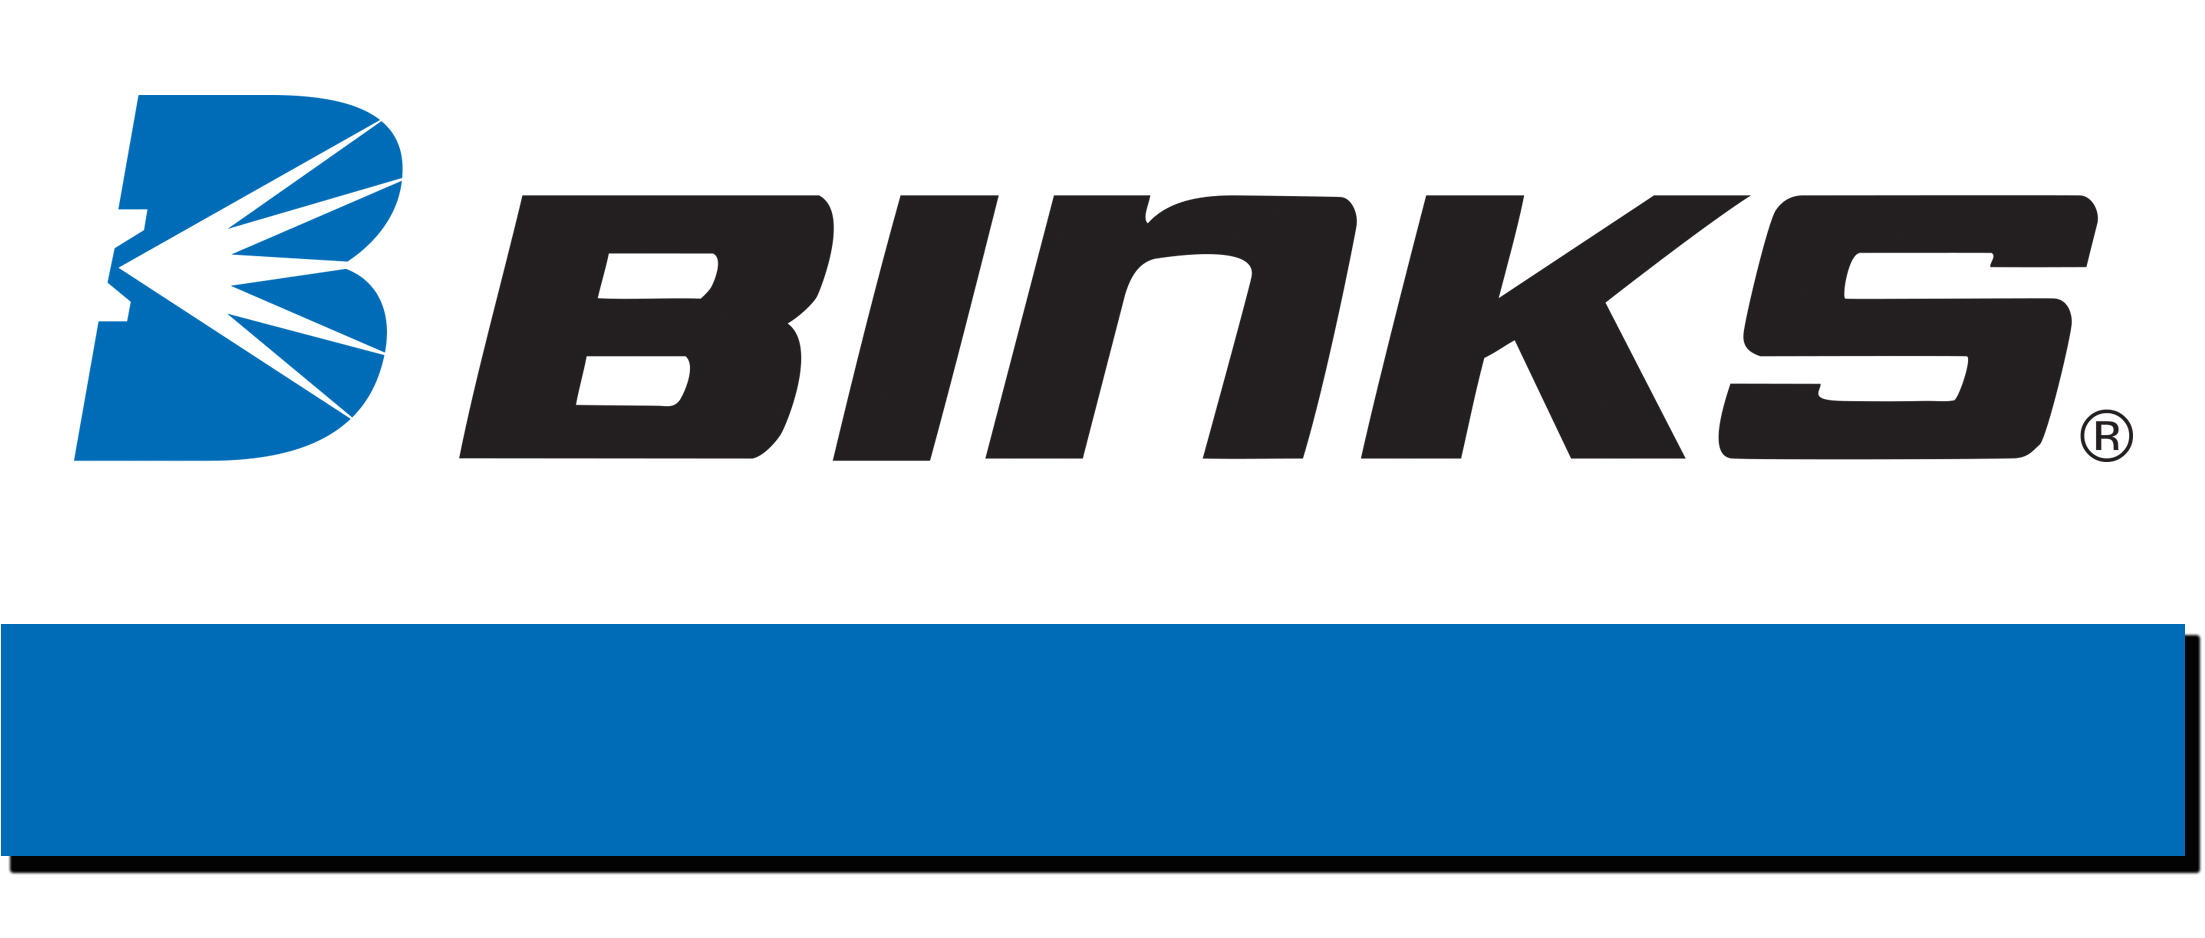 Binks Logo